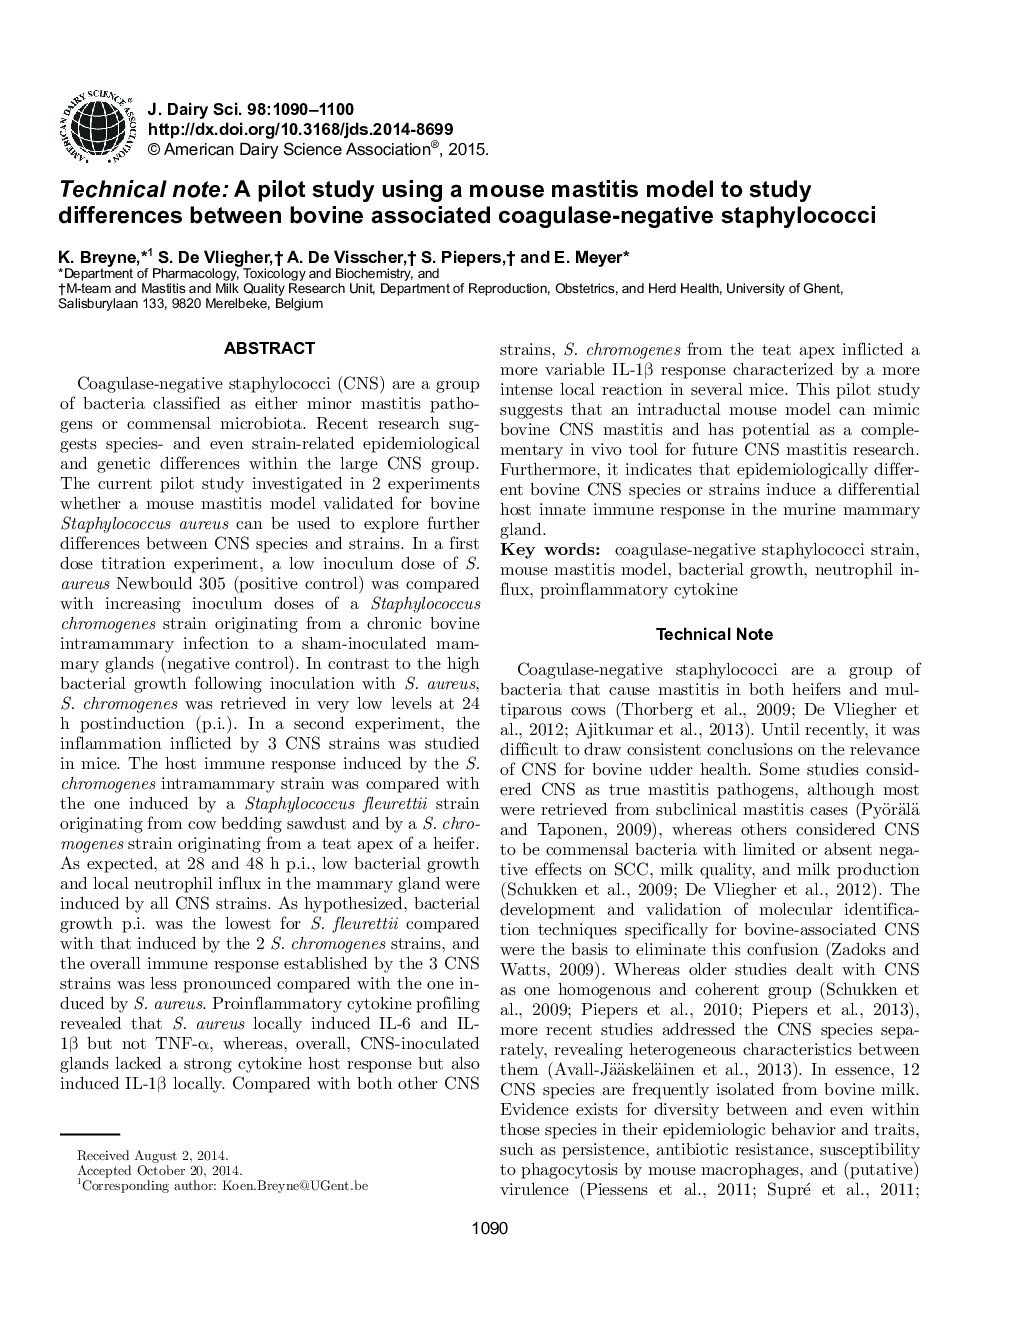 یادداشت فنی: یک مطالعه آزمایشی با استفاده از یک مدل ماستیت موش صحرایی برای مطالعه تفاوت بین استافیلوکوک های کواگولاز منفی همراه با گاو 